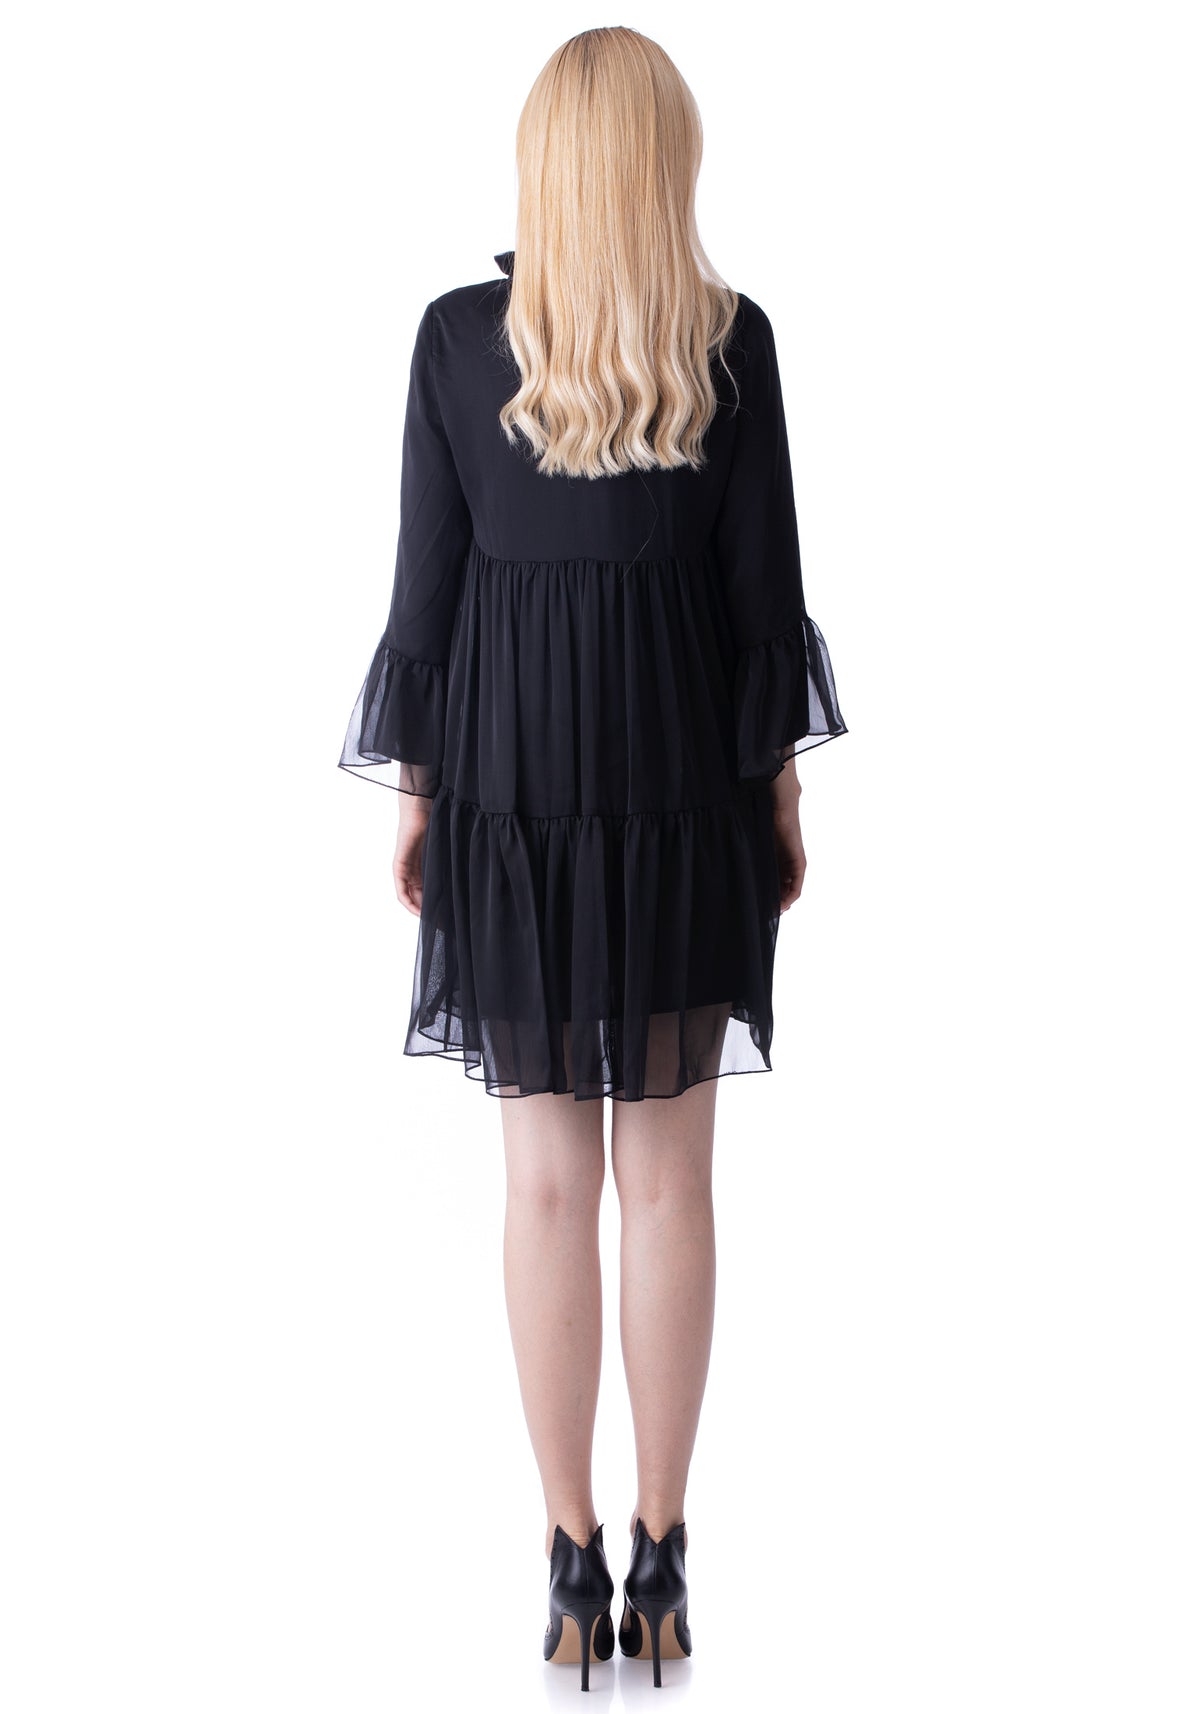 Embroidered Short Black Dress